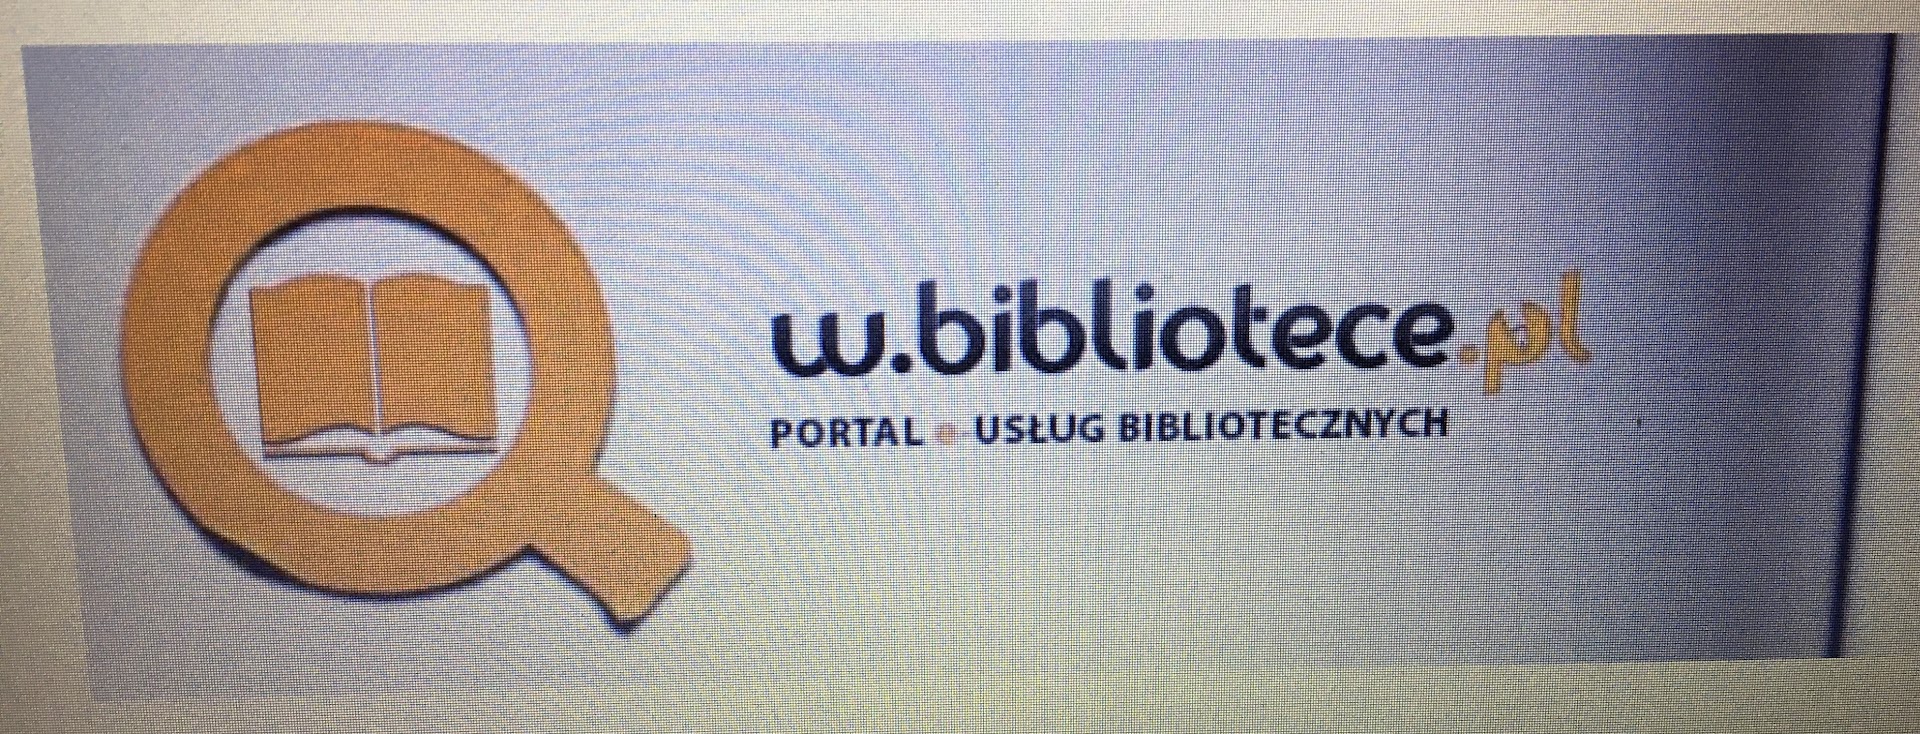 Read more about the article Portal e-usług bibliotecznych – www.w.bibliotece.pl